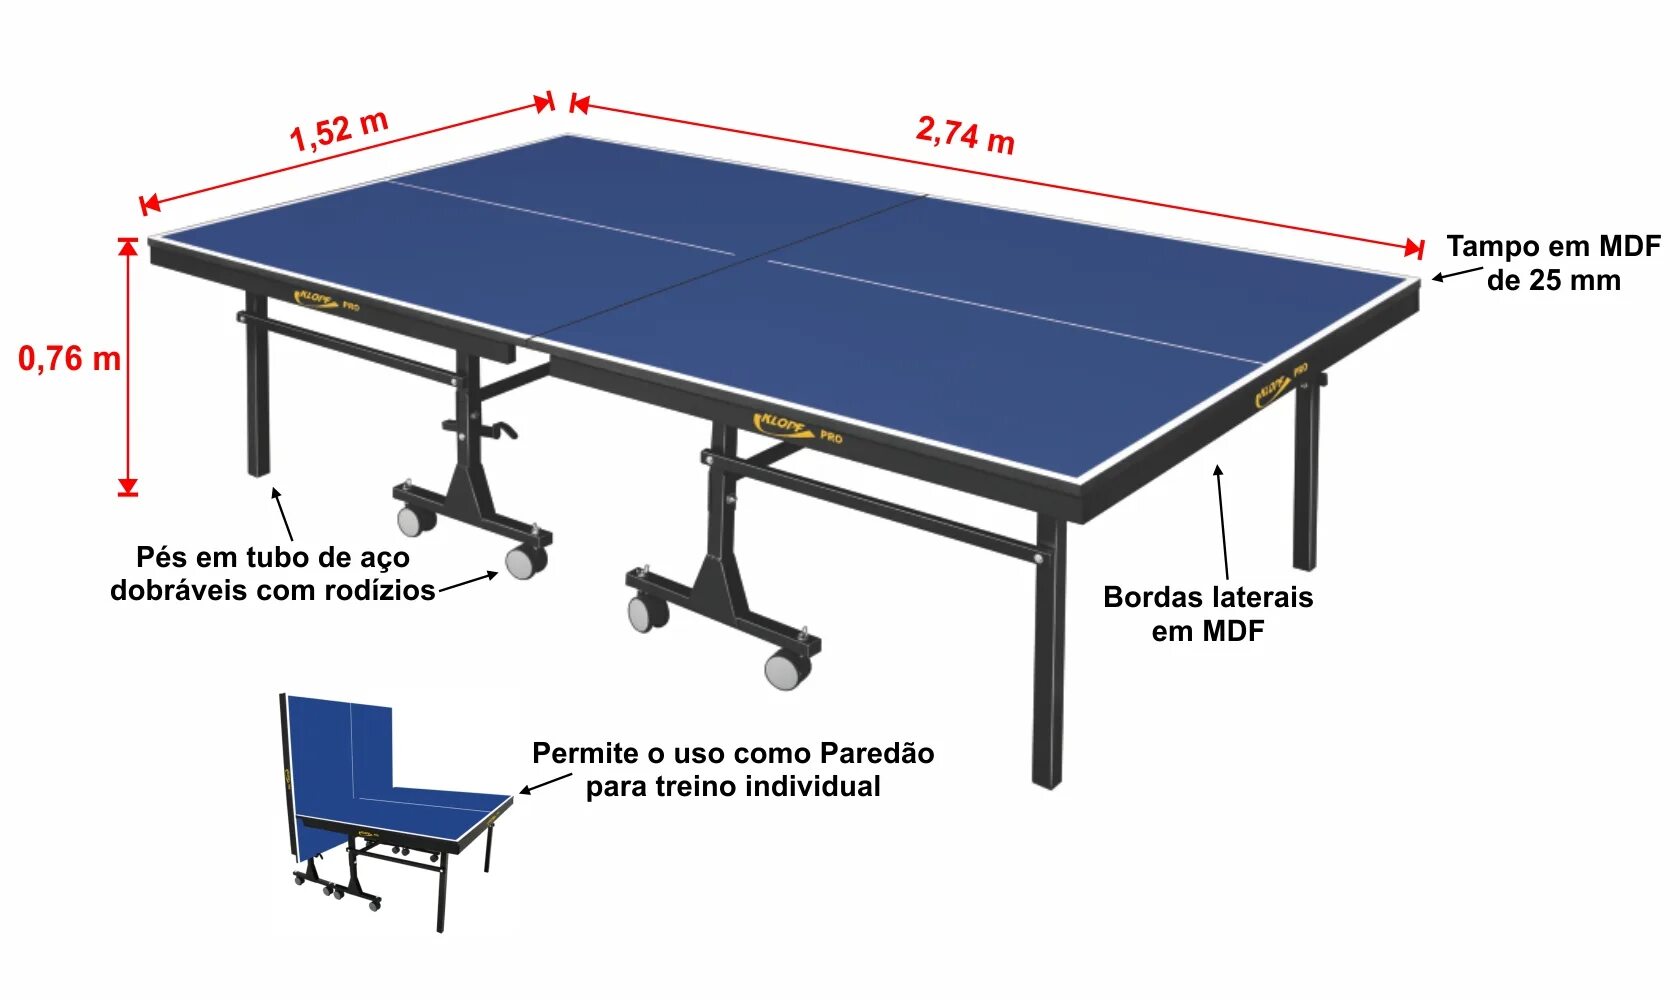 Высота теннисного стола для настольного тенниса. Размеры настольного теннисного стола стандарт. Ширина разметки теннисного стола. Габариты теннисного стола настольного тенниса.